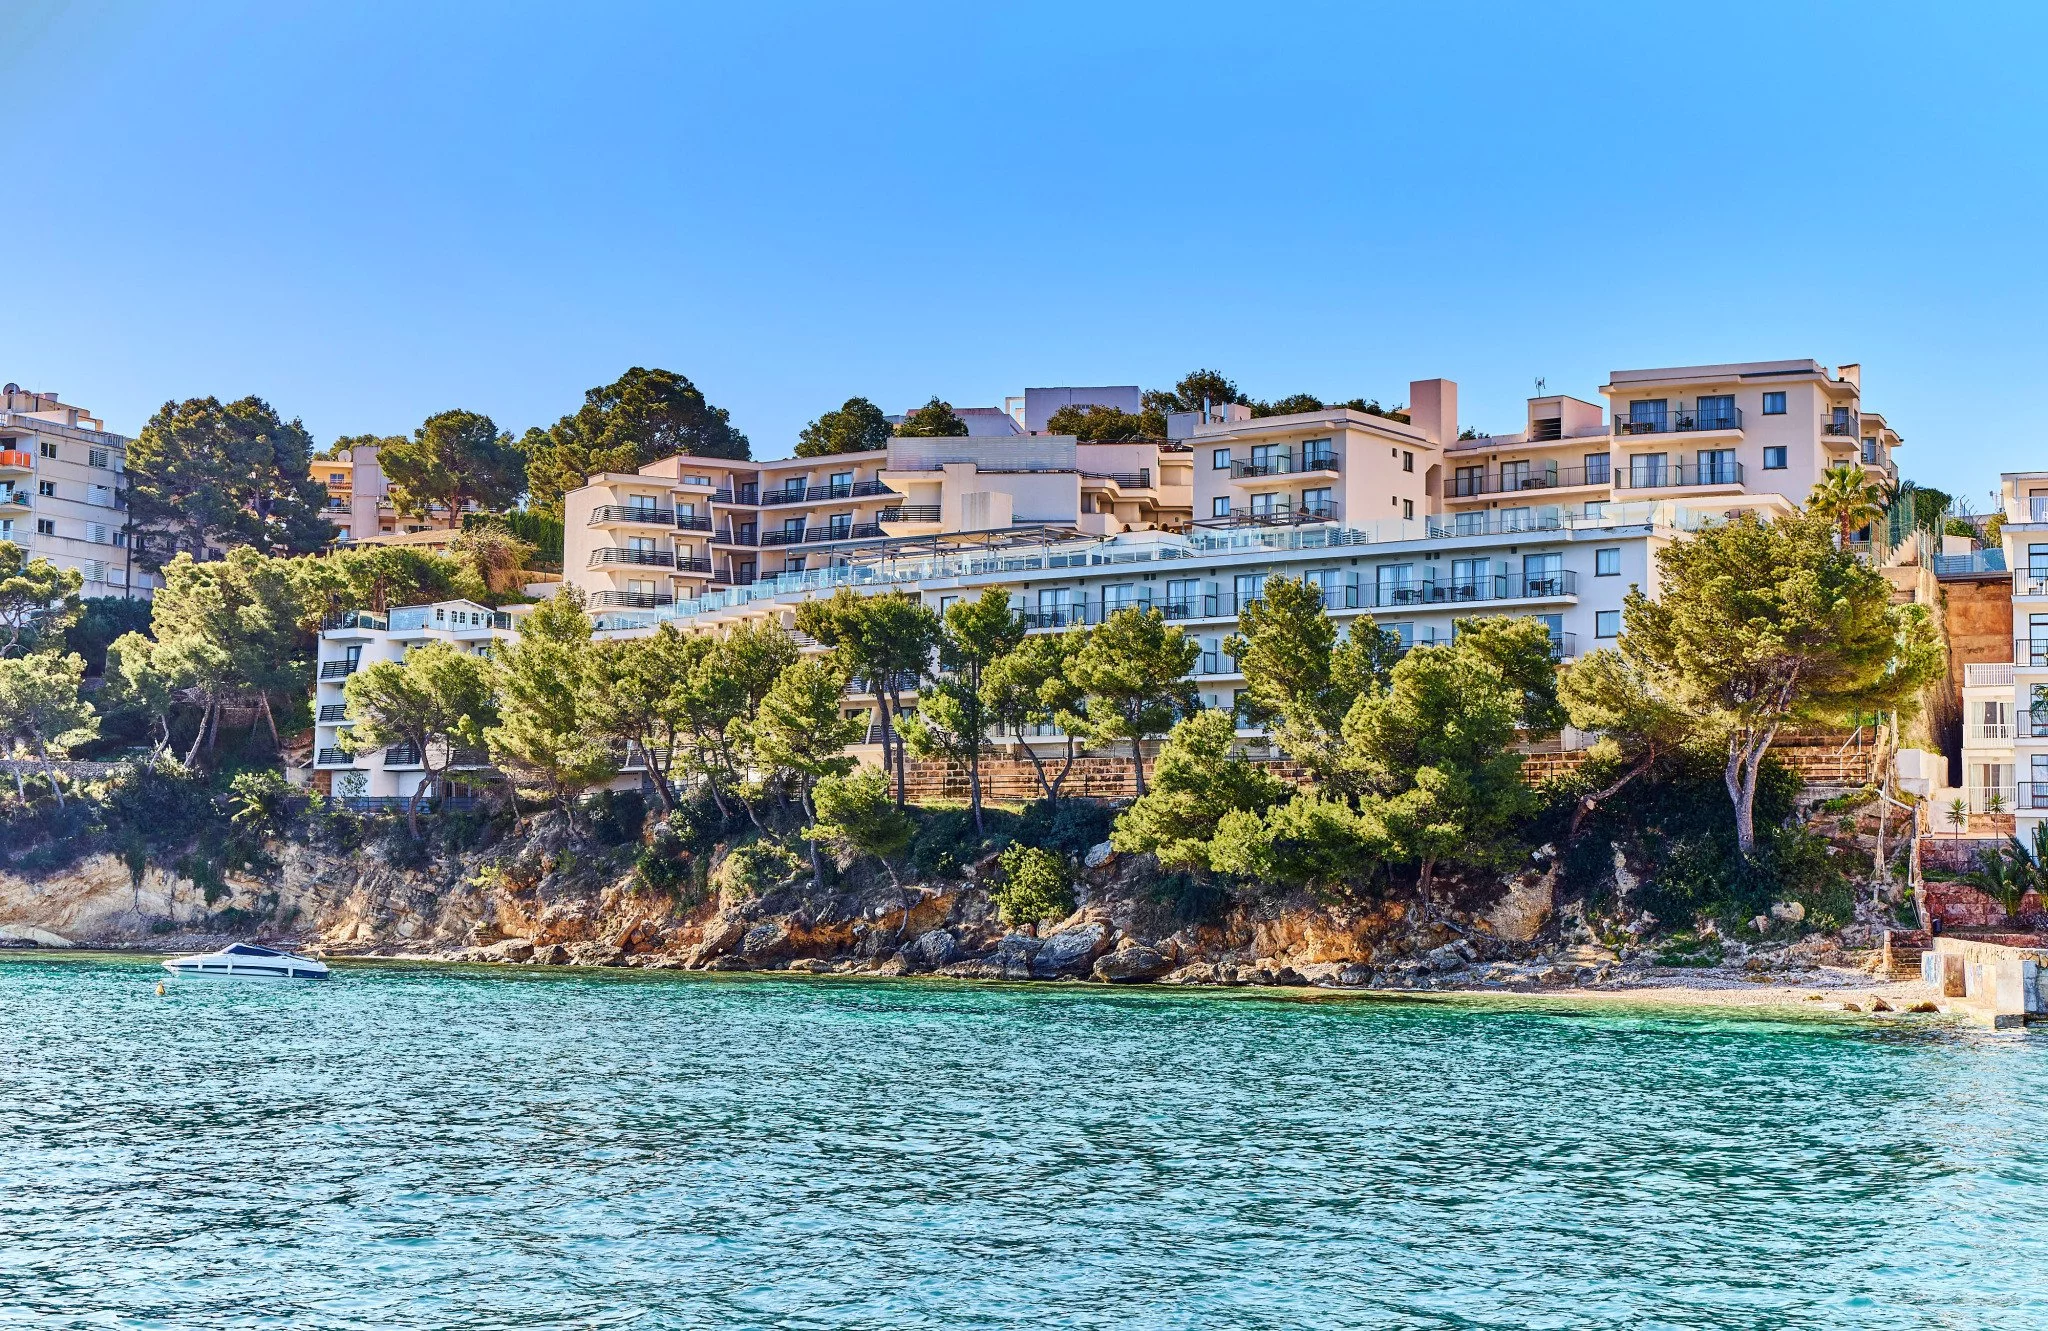 Leonardo Royal Hotel Mallorca Palmanova Bay - Exterior/Hotel View